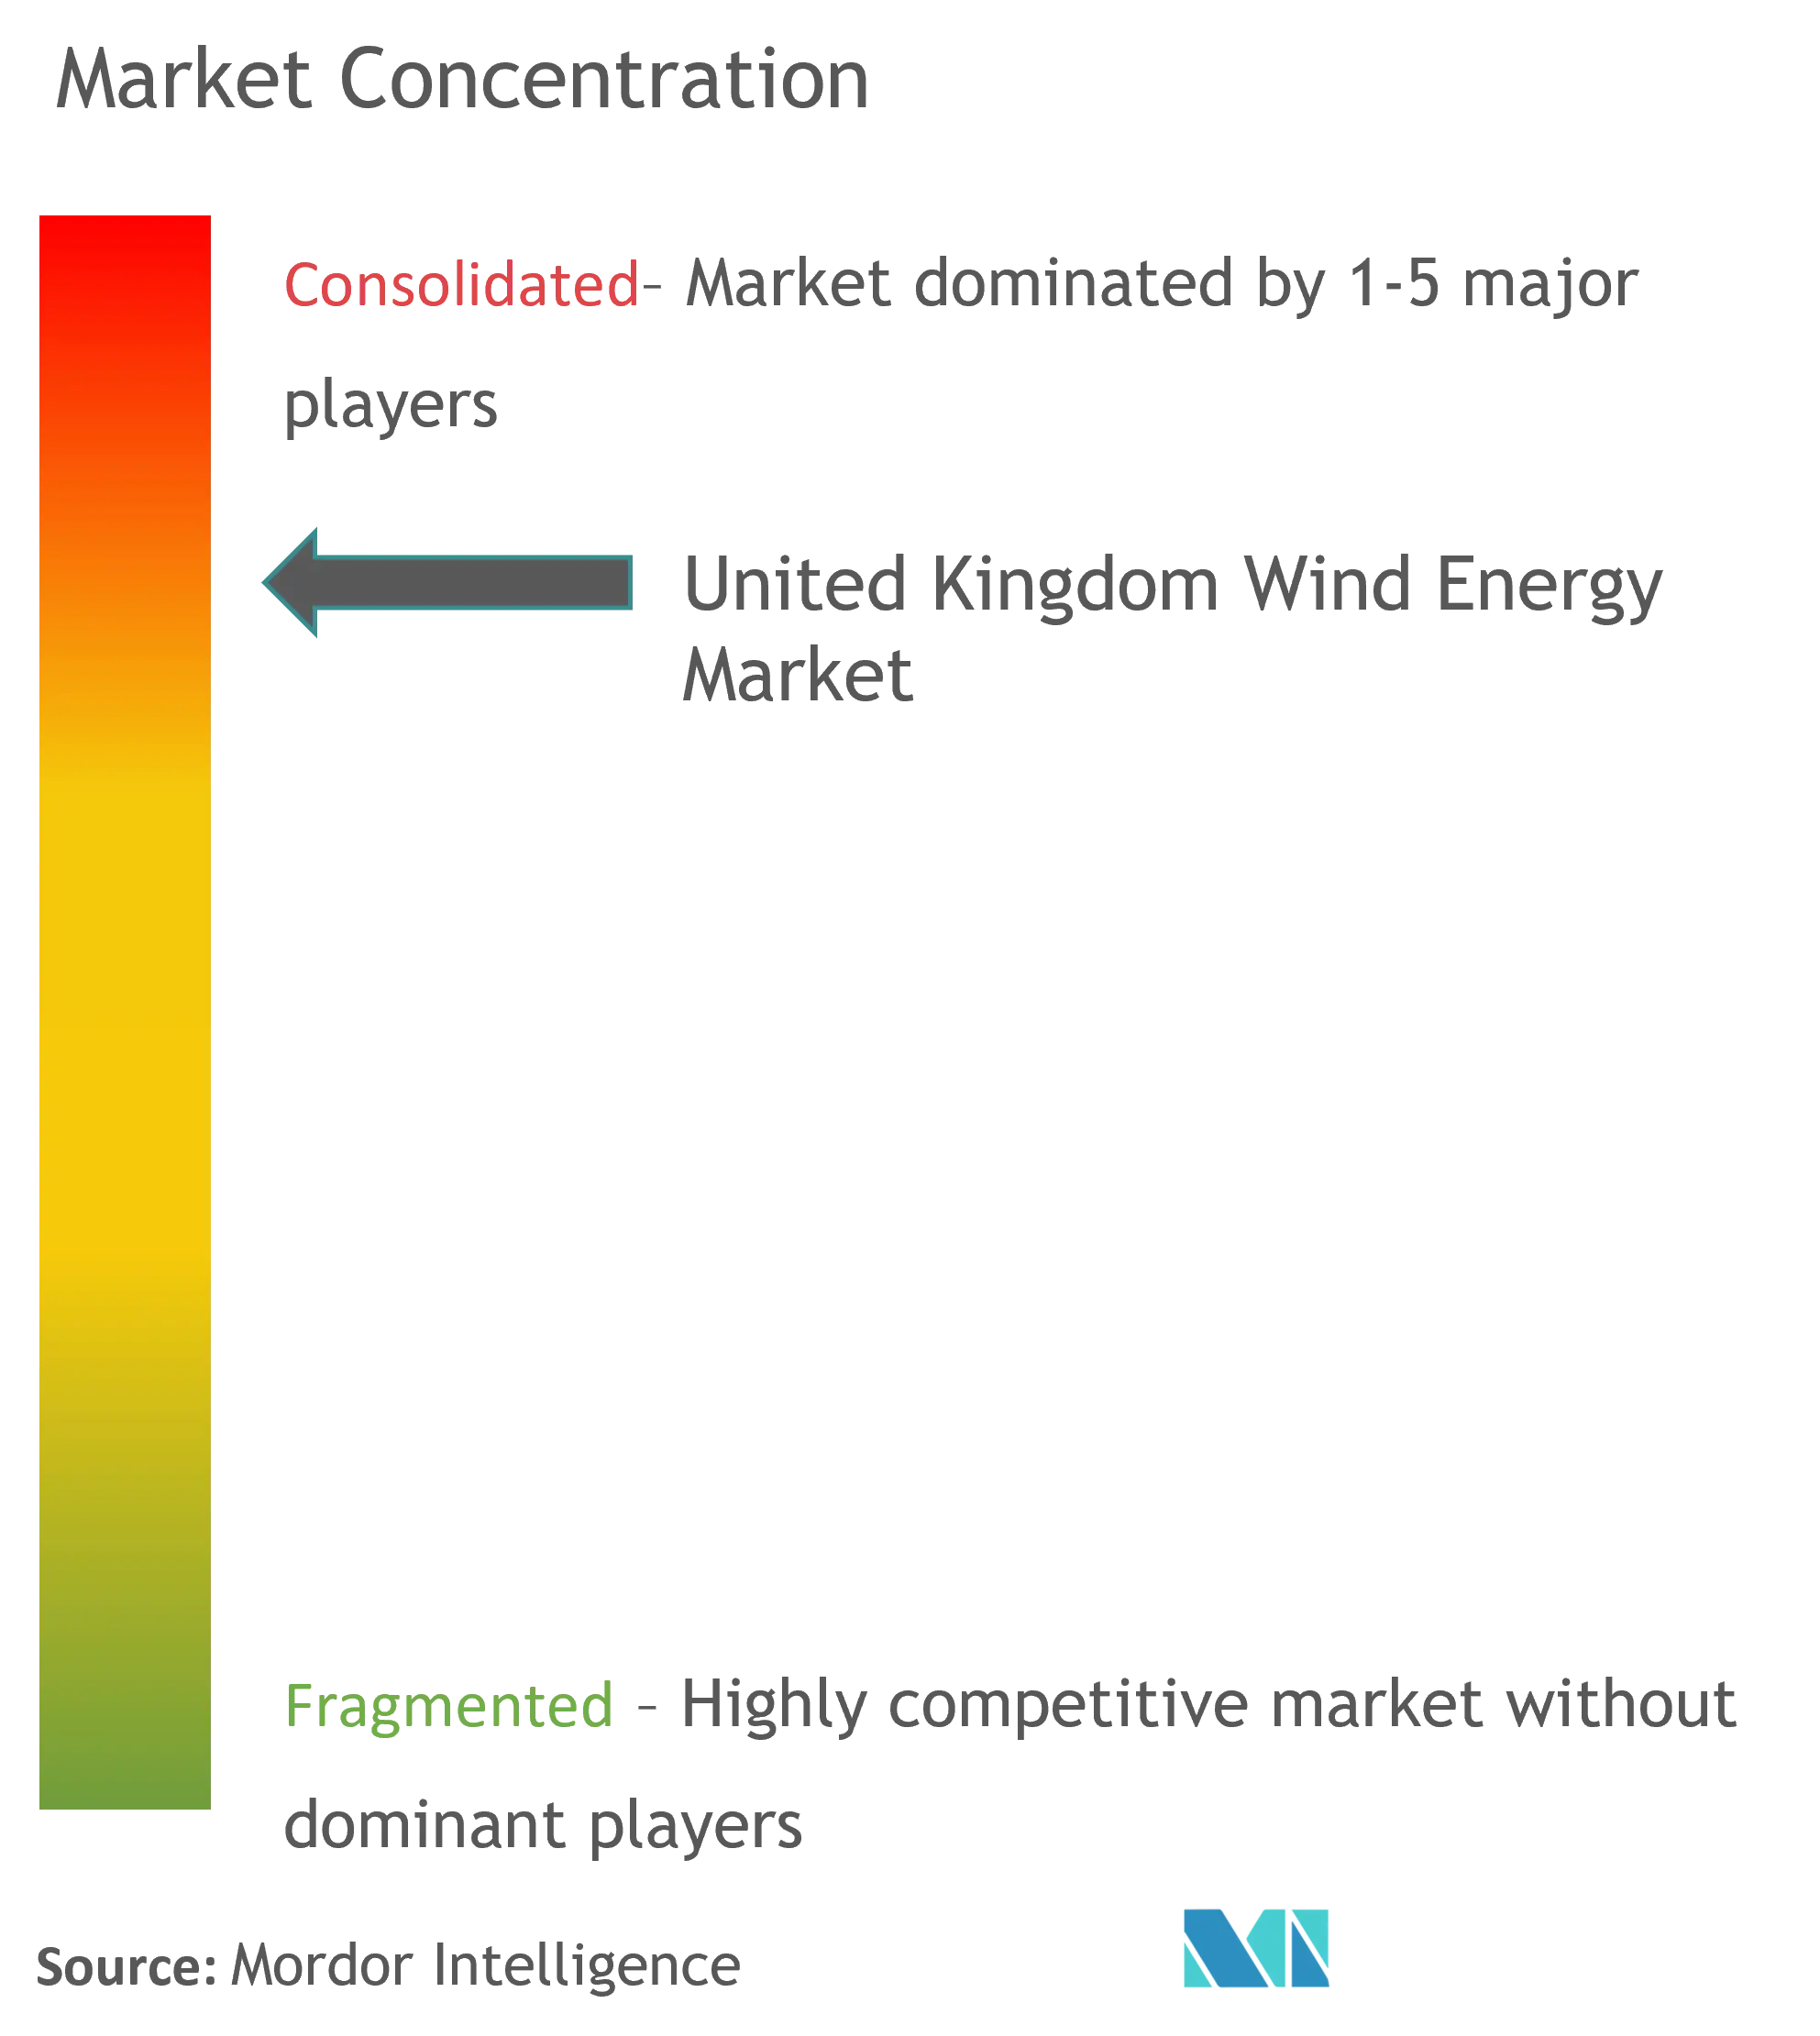 Market Concentration-United Kingdom Wind Energy Market.png